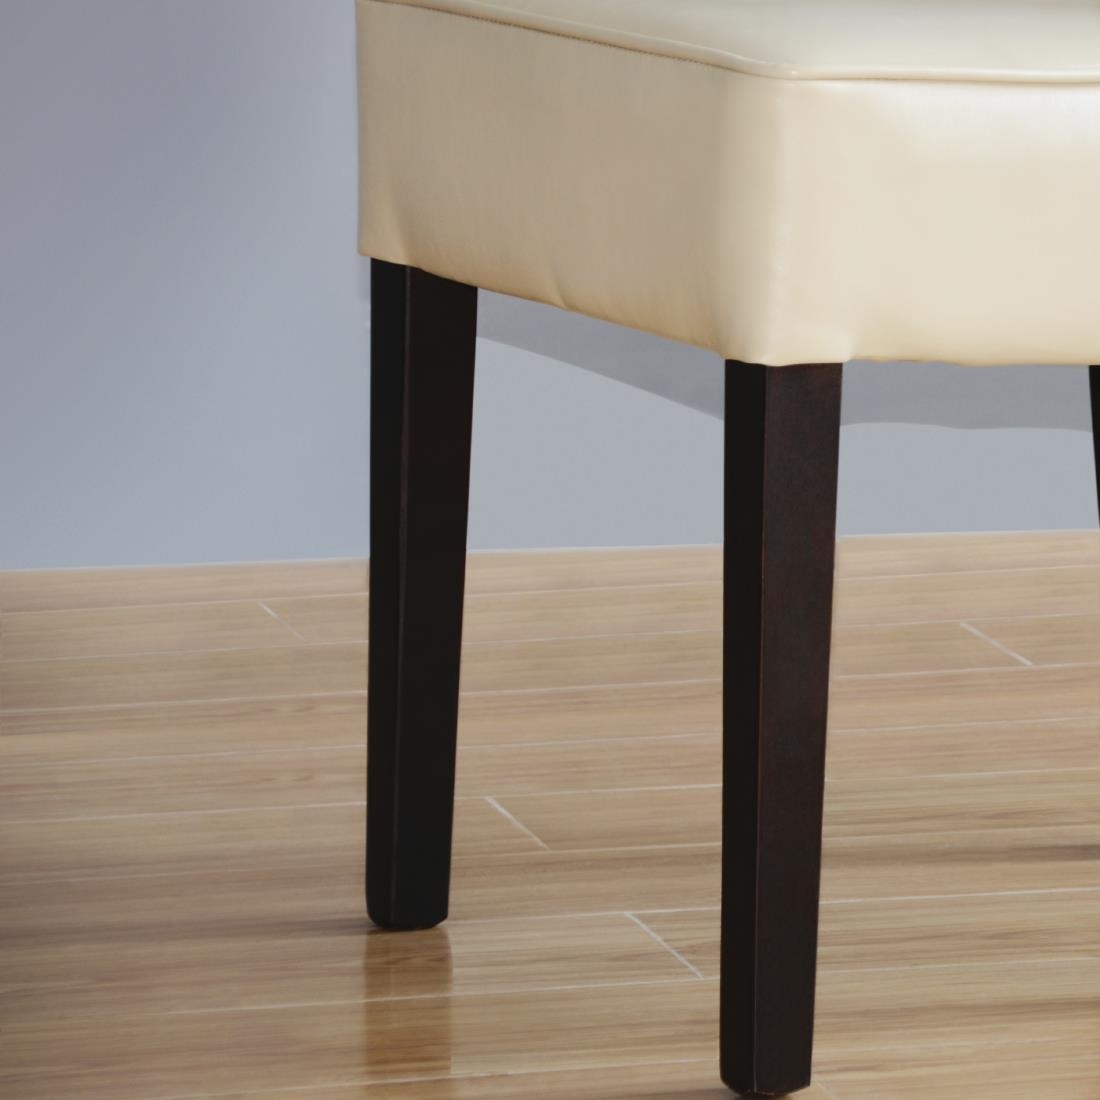 Esszimmerstühle | Tiefem Sitz | 2 Stück | Kunstleder und Birkenholz | Erhältlich in 2 Farben